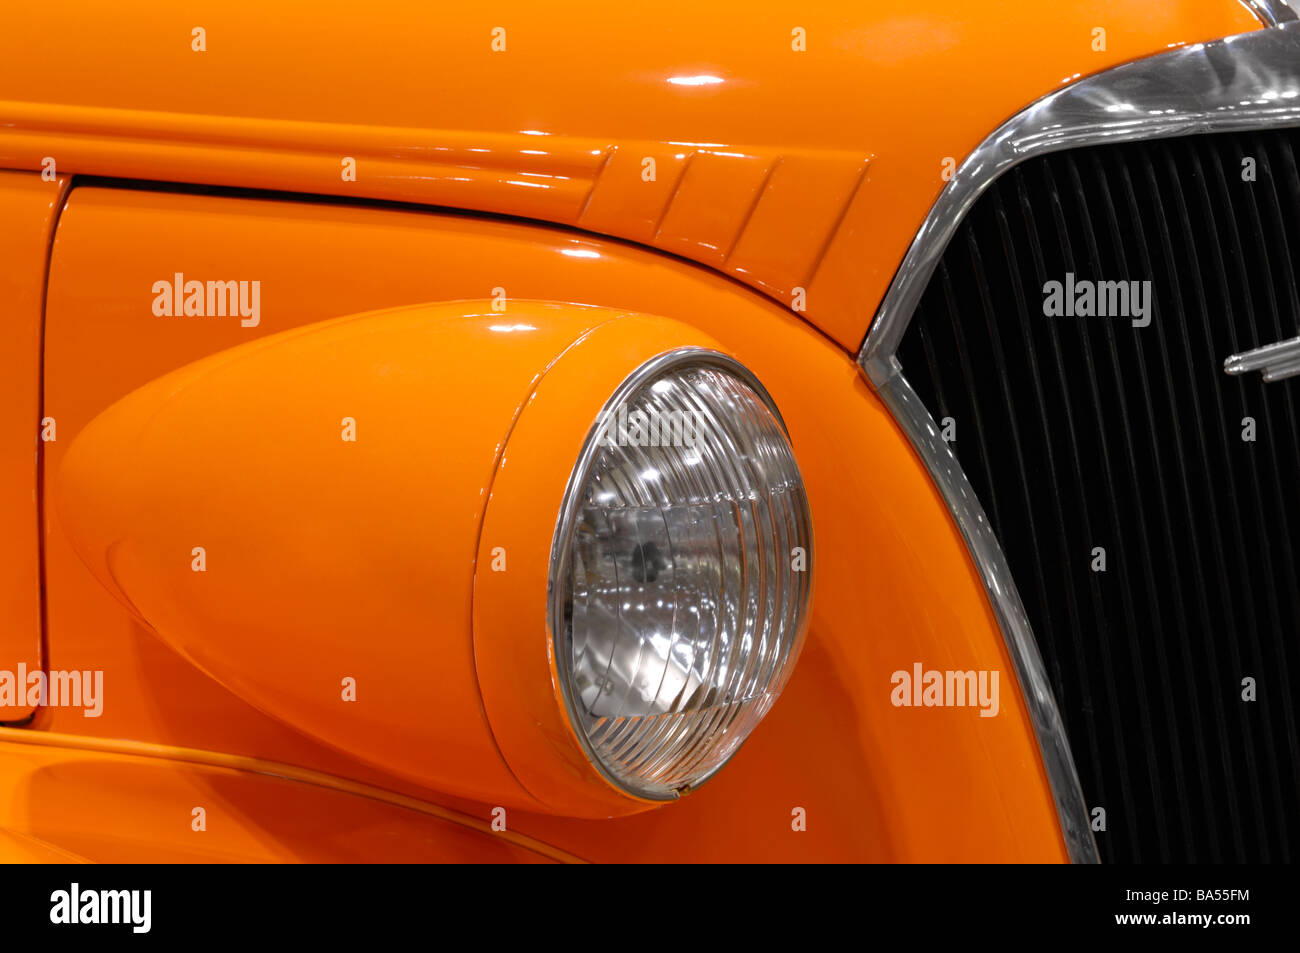 Orange classic custom car details Stock Photo